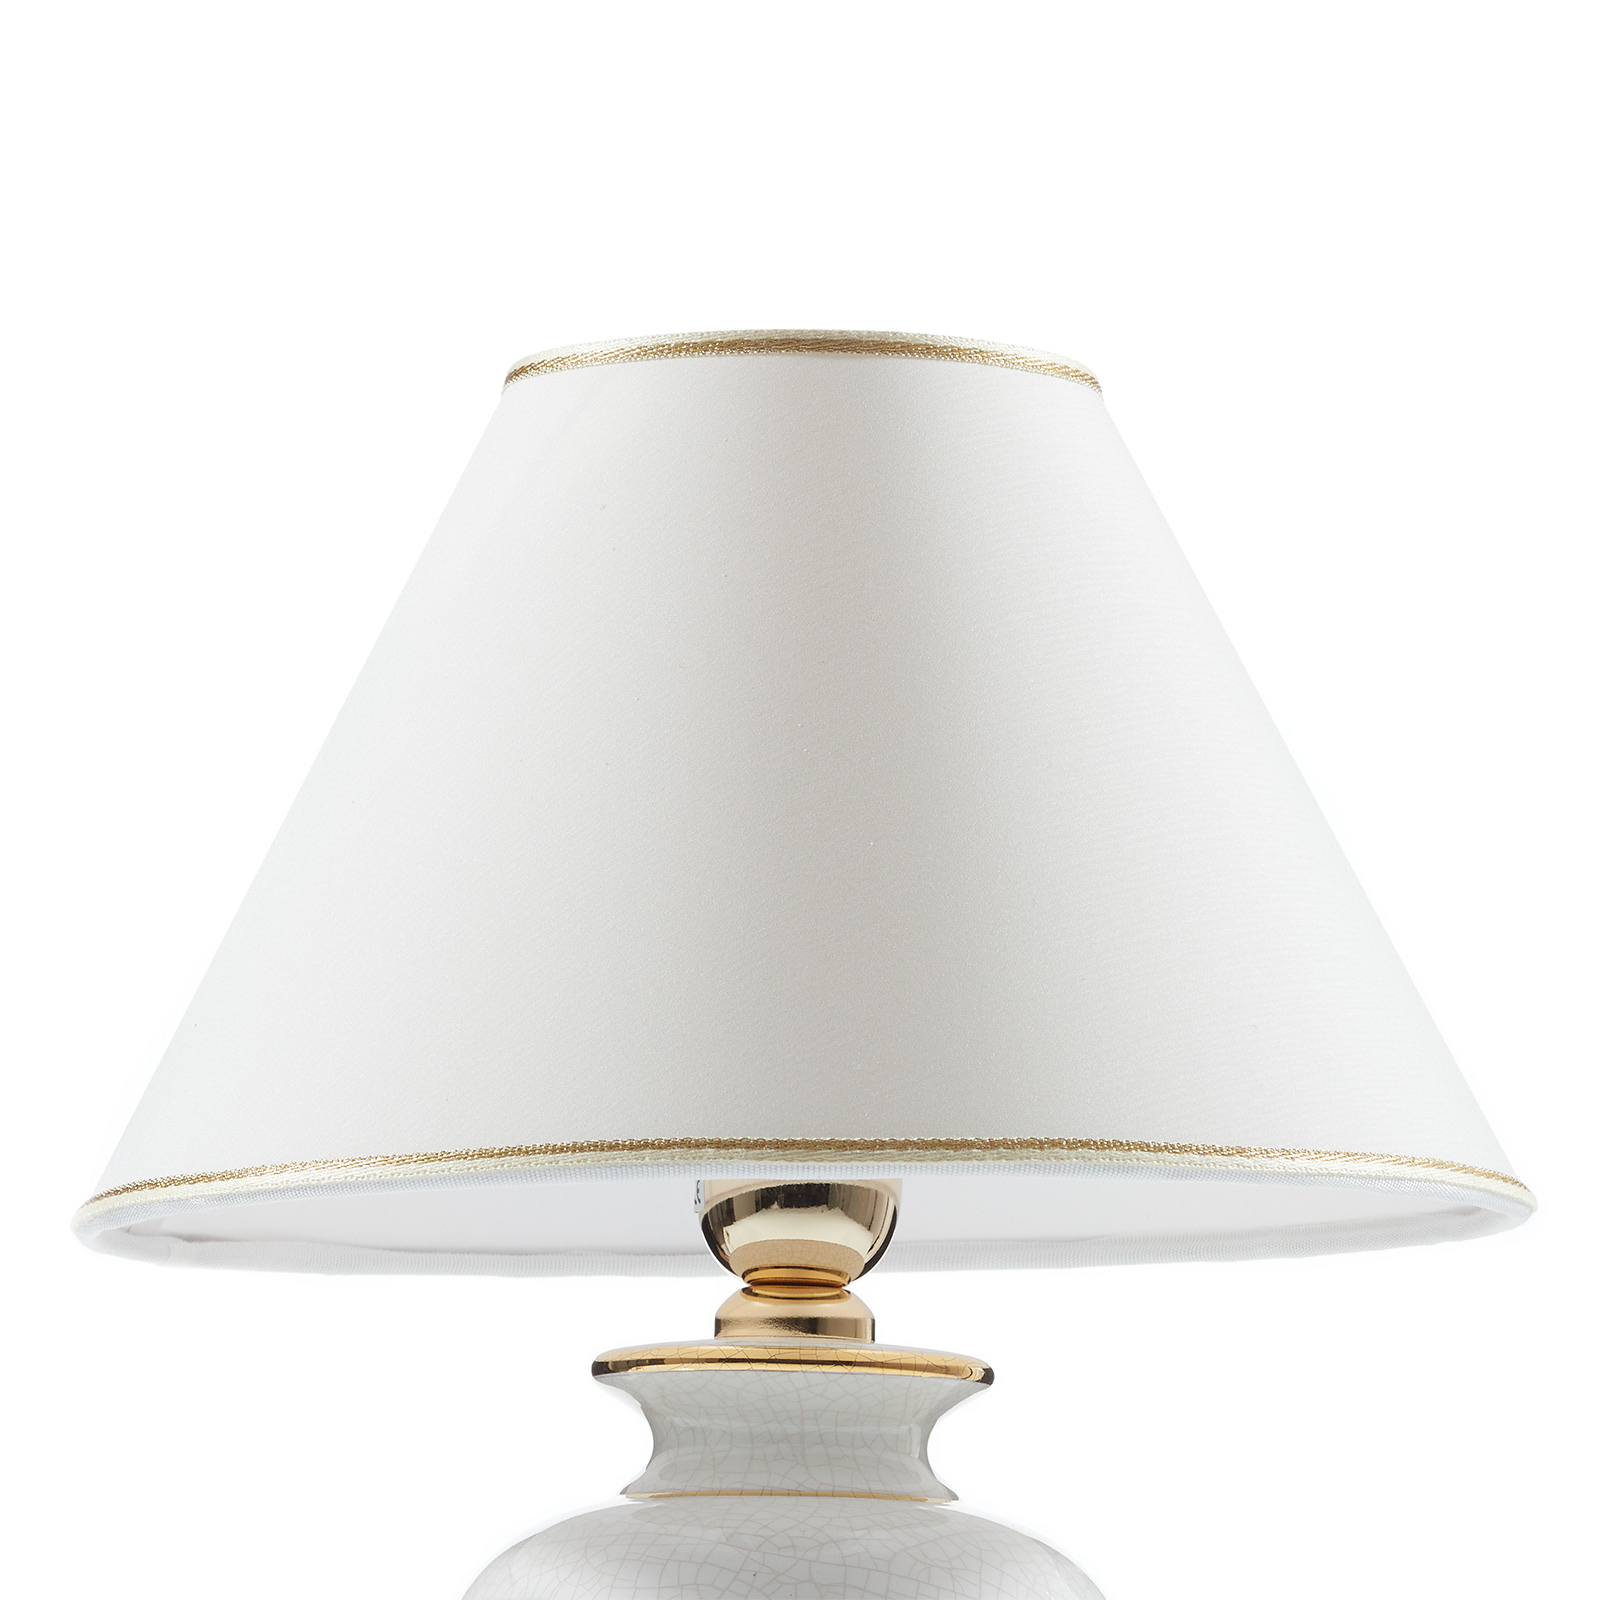 KOLARZ Giardino Craclee настолна лампа, кремава, 30 cm